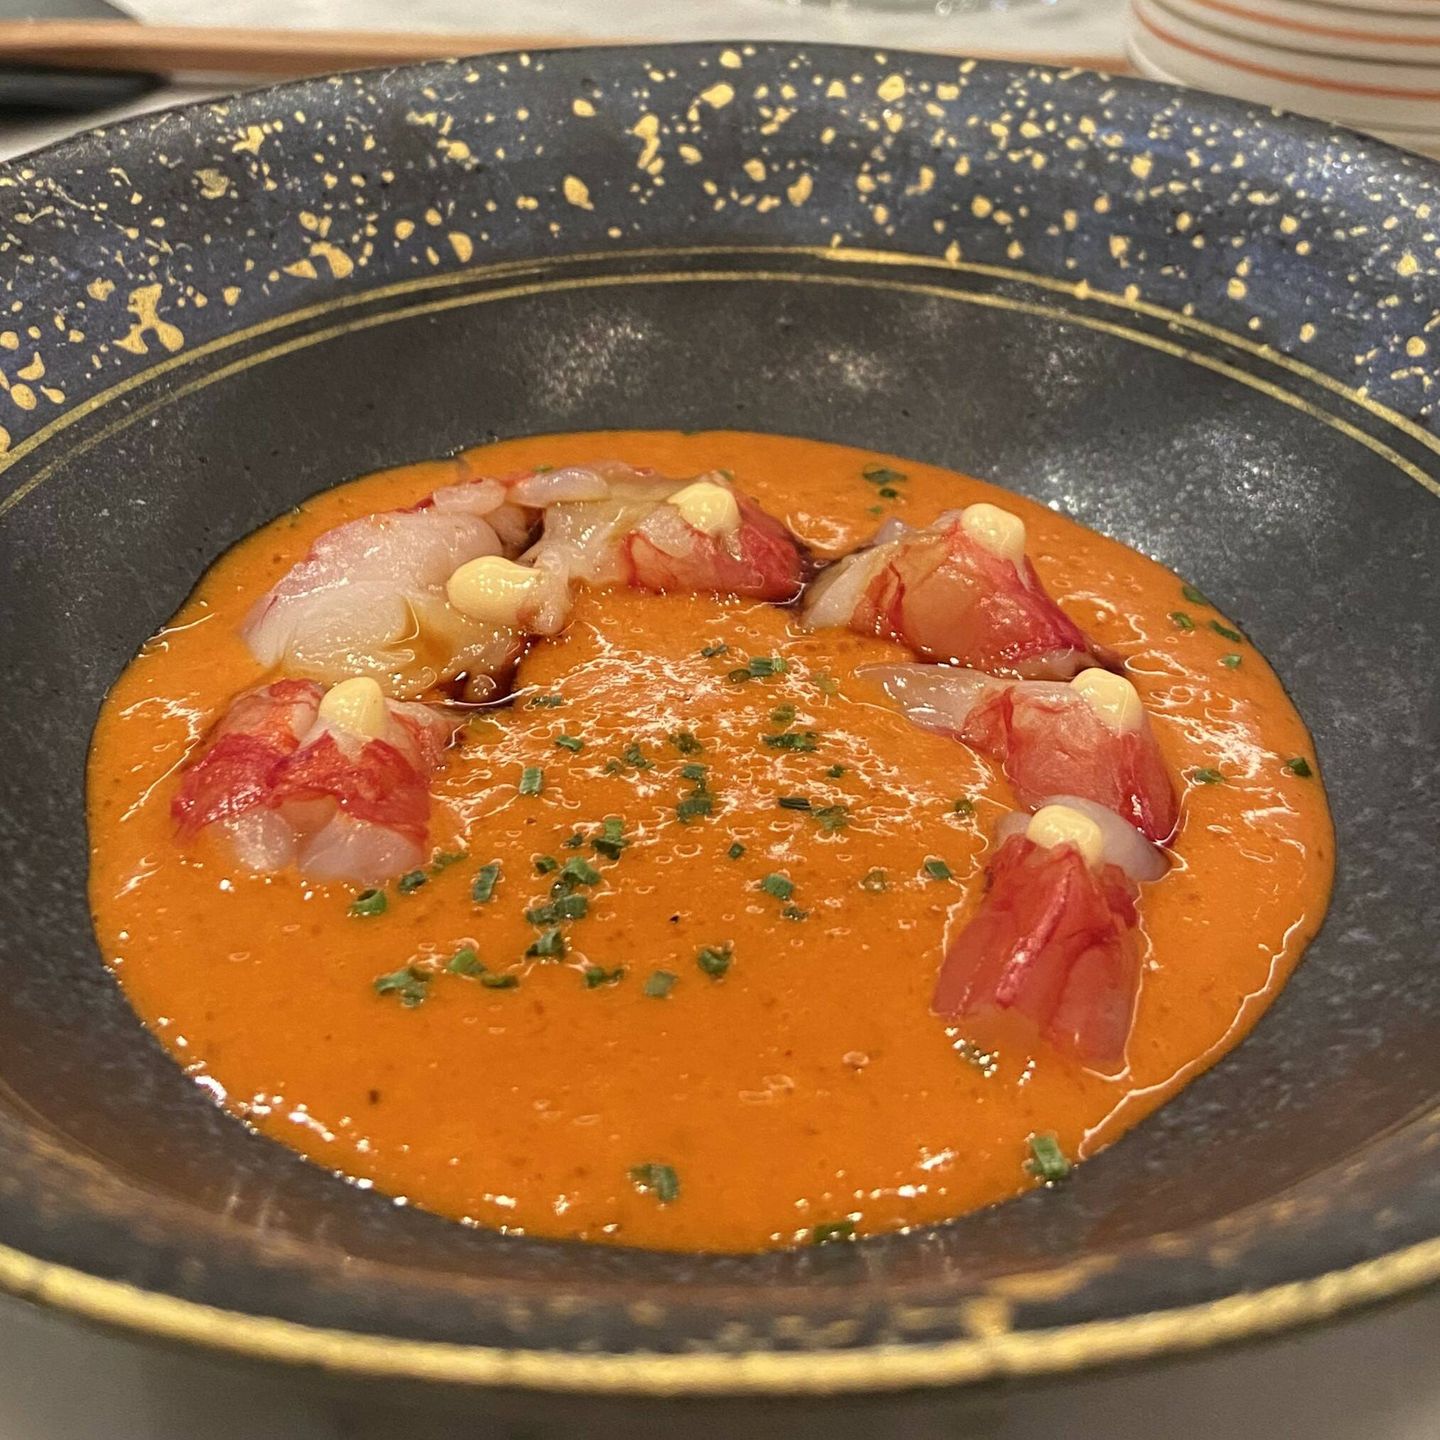 Este sashimi de carabinero merece la visita a este restaurante con tres soles Repsol. (Cortesía)